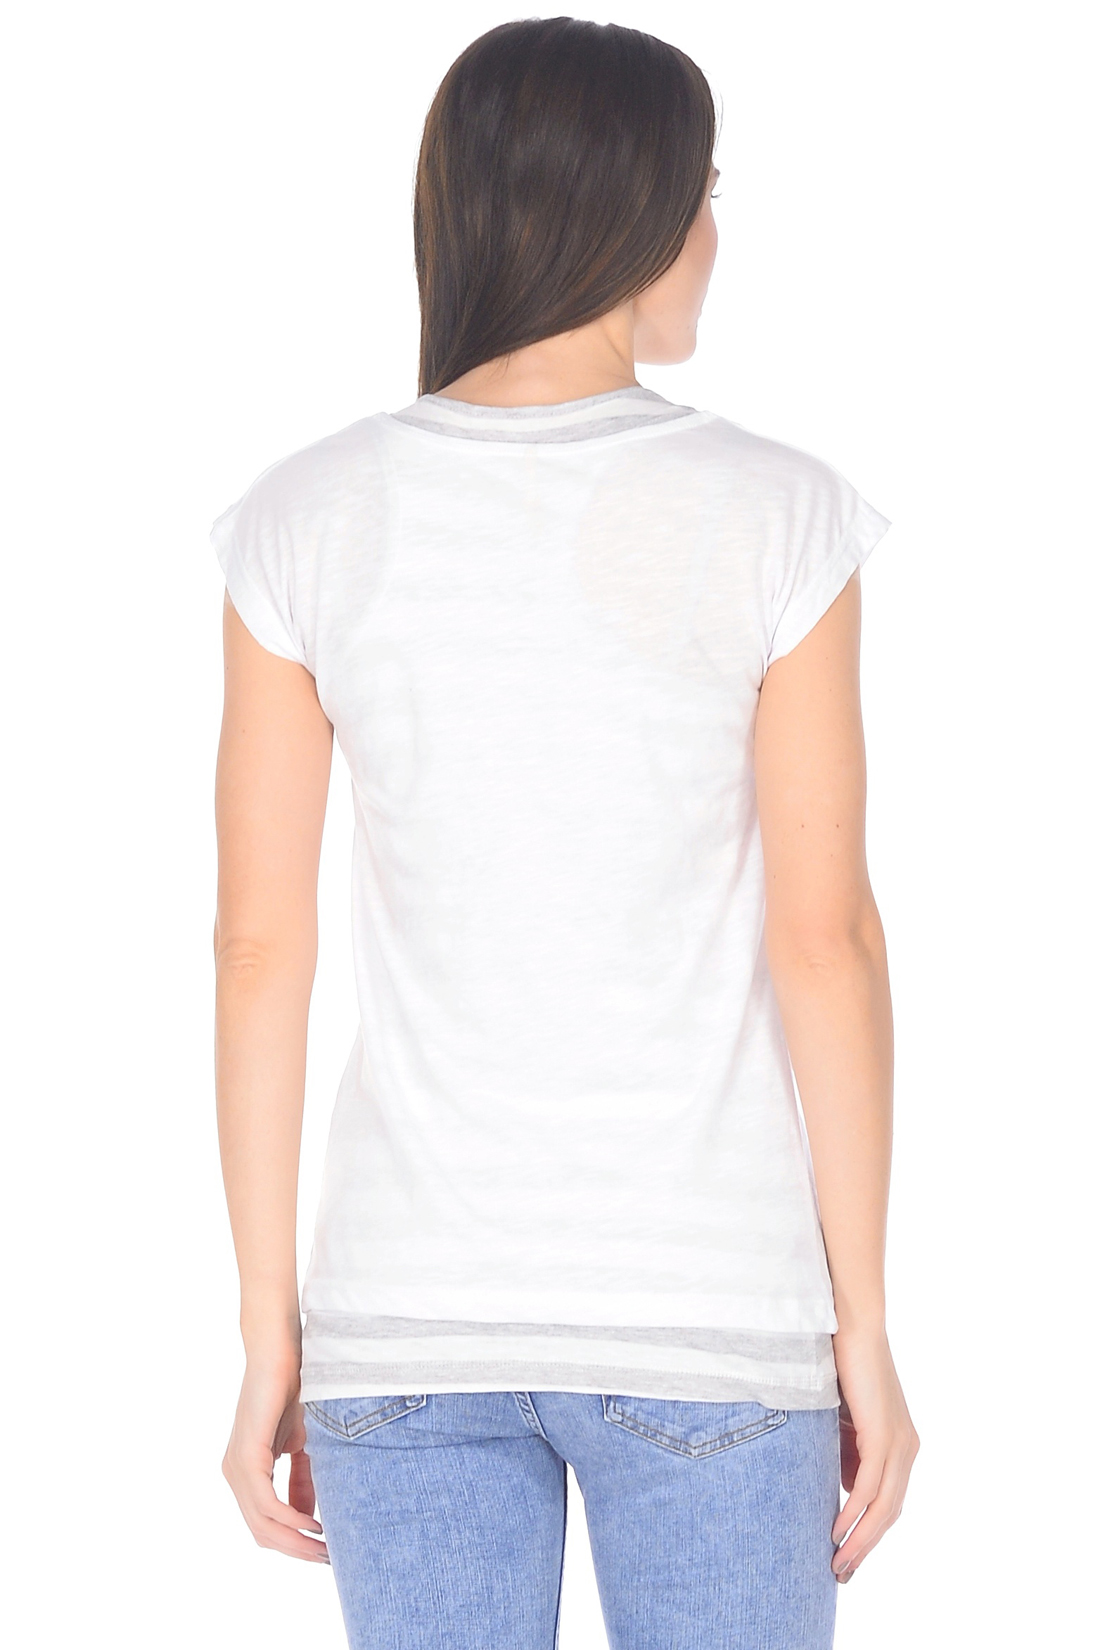 Двойная футболка с принтом (арт. baon B238093), размер XXL, цвет белый Двойная футболка с принтом (арт. baon B238093) - фото 2